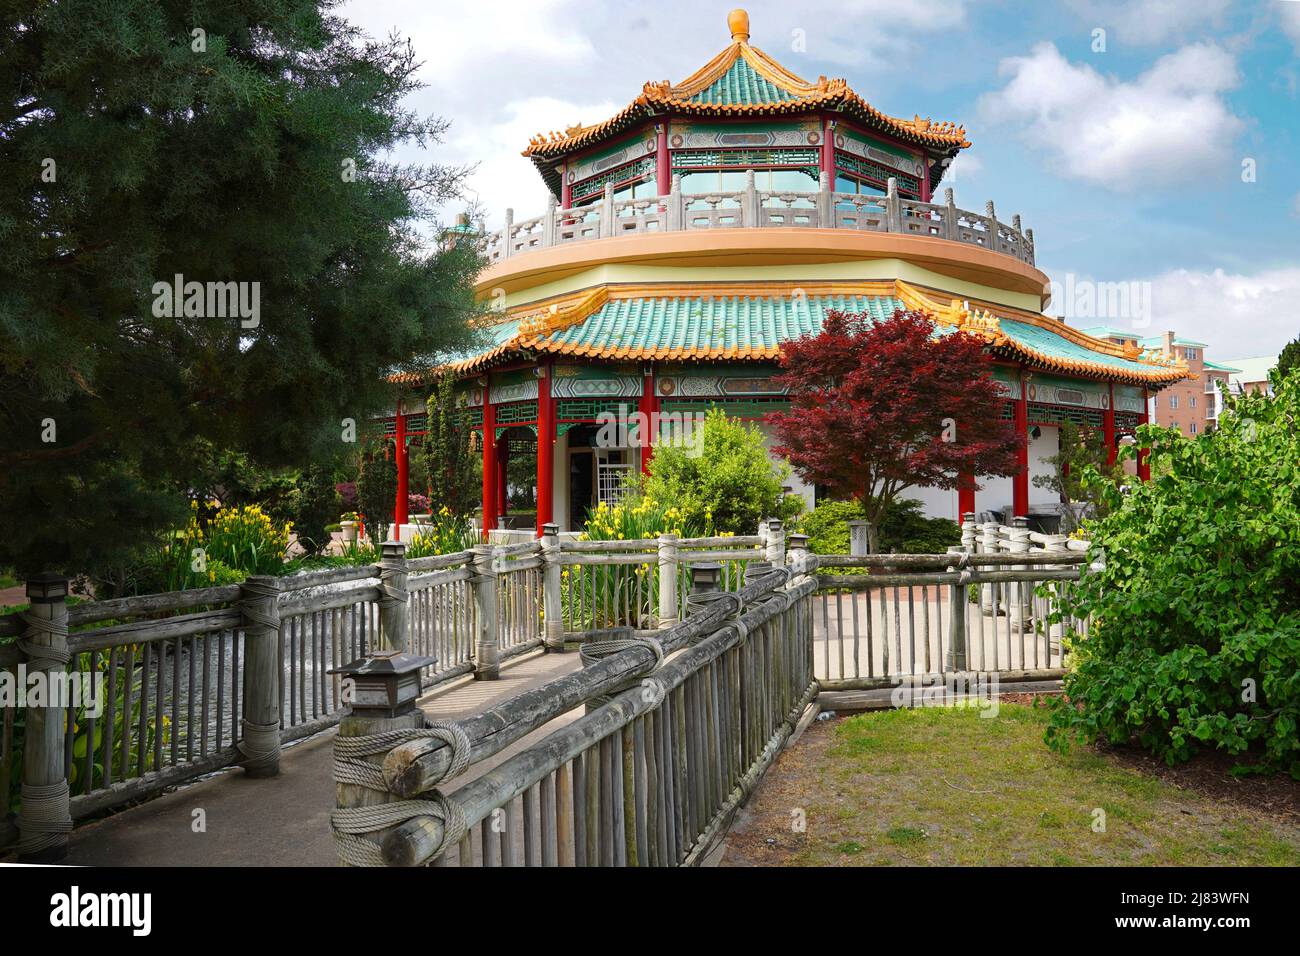 La pagoda es parte de los jardines orientales y fue un regalo a Virginia y la Ciudad de Norfolk en 1989 en honor a los Taiwans que negociaban lazos con Virginia. Foto de stock